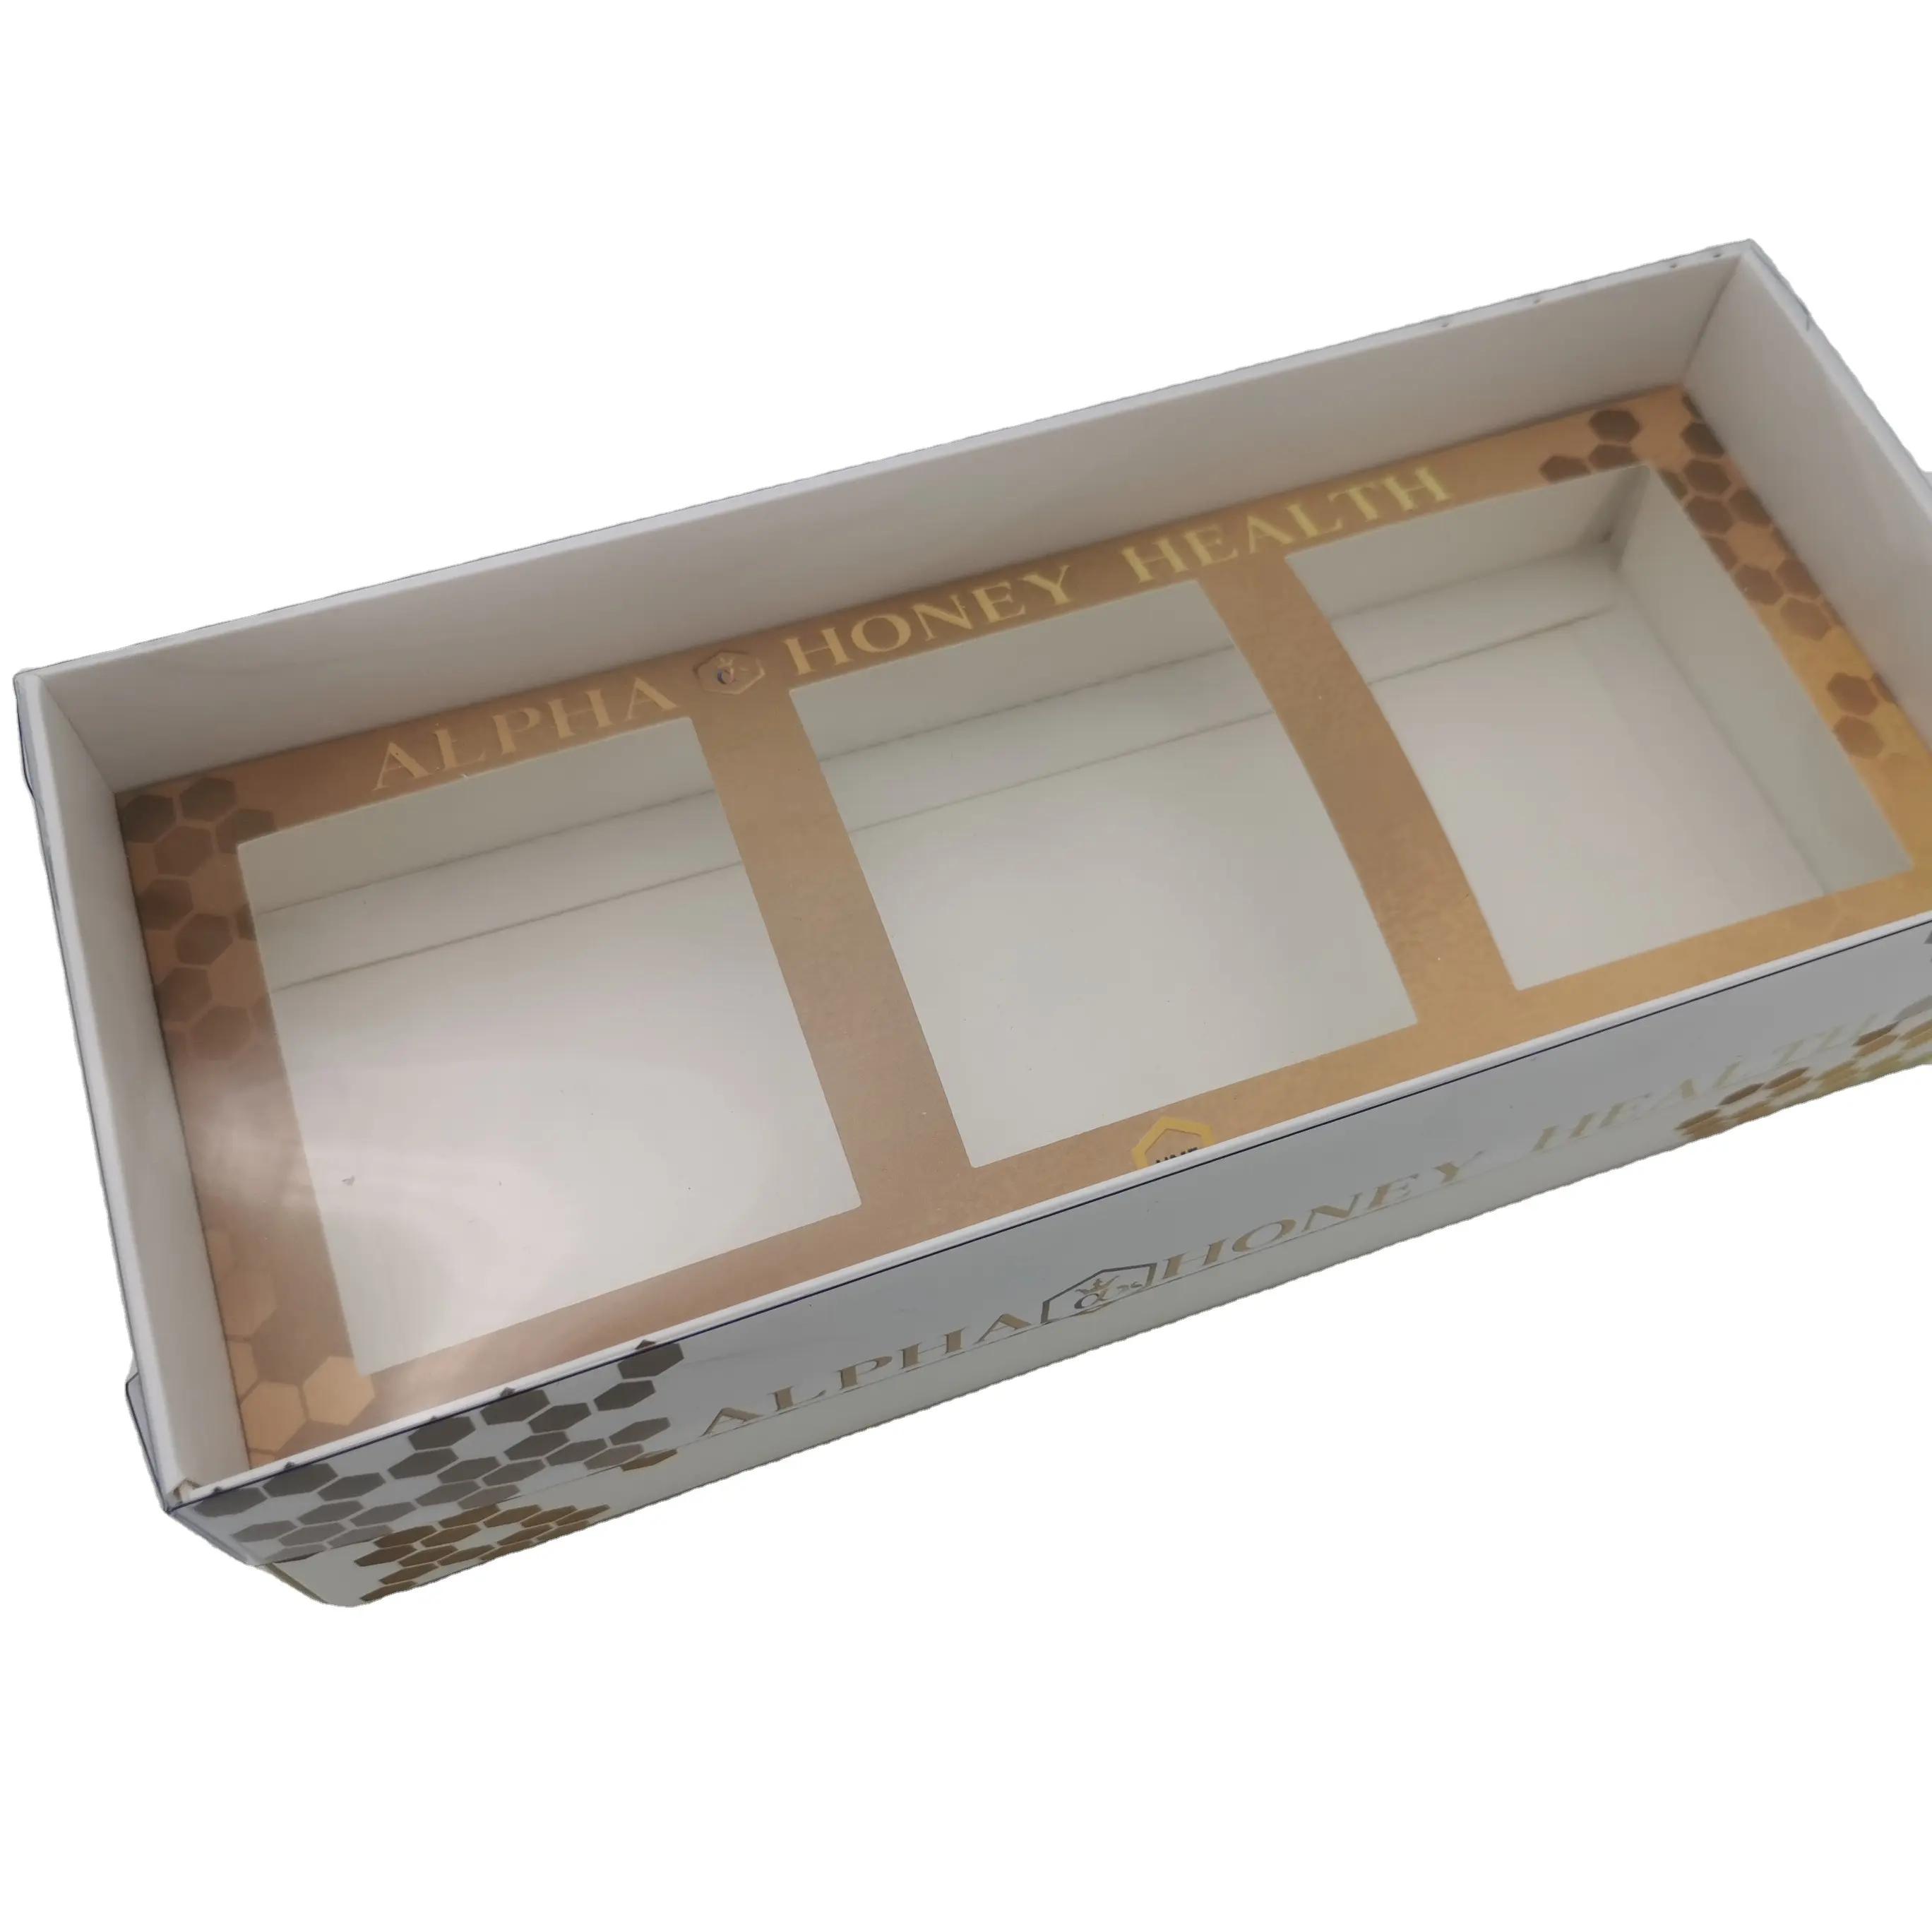 कस्टम कागज शहद उत्पाद स्पष्ट ढक्कन के साथ सेट पैकेजिंग बॉक्स